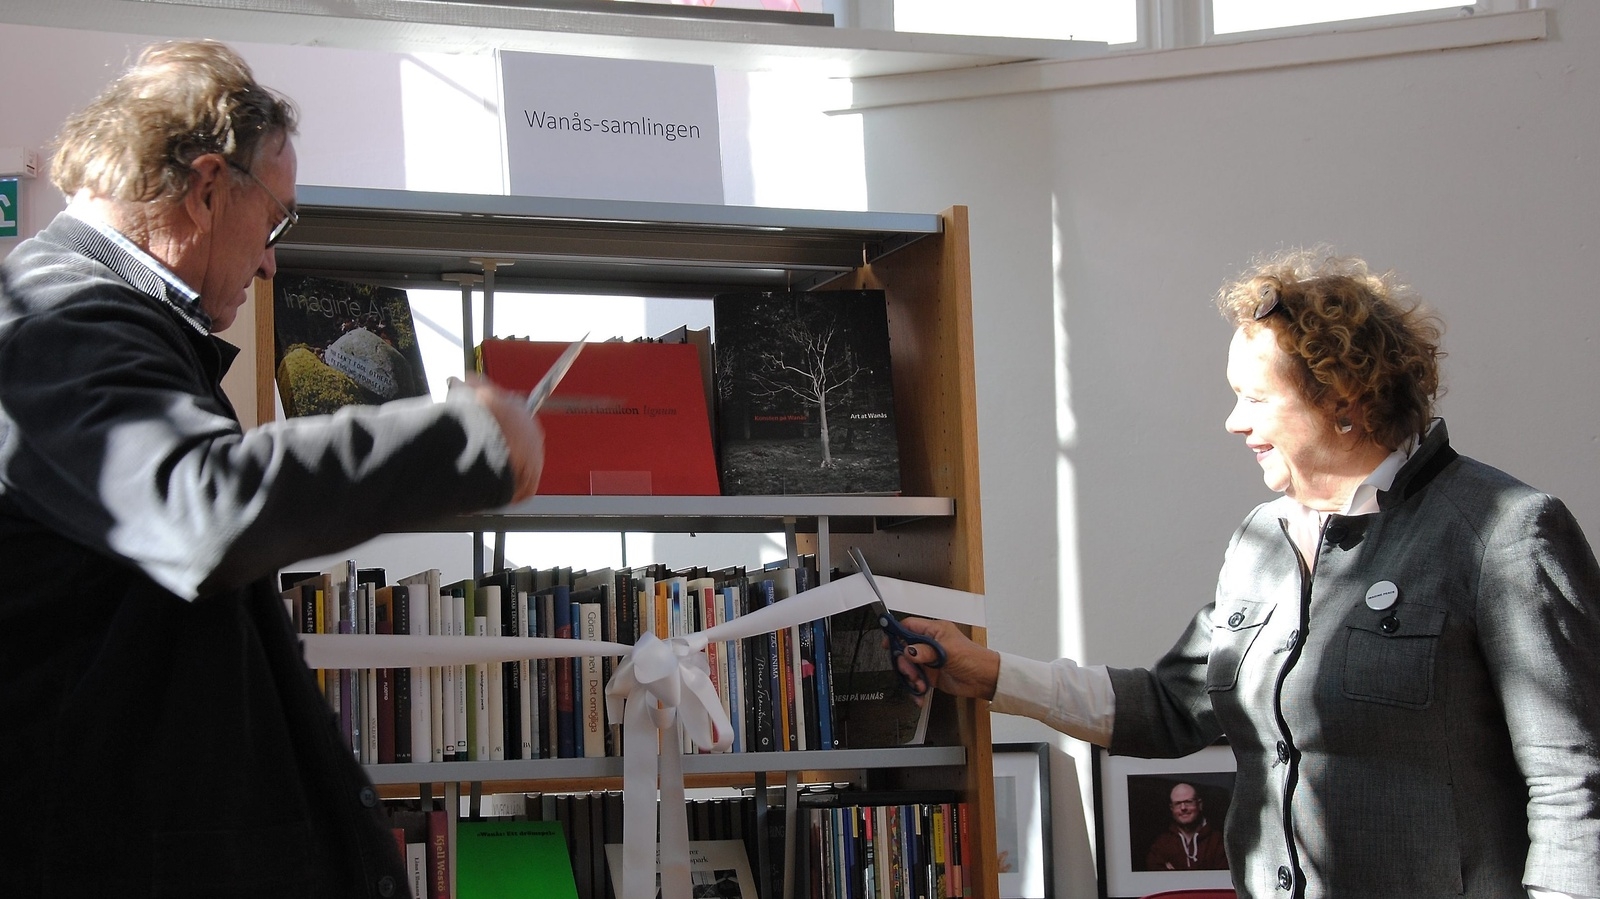 Marika och CG Wachtmeister klippte av bandet till samlingen på biblioteket i Broby. FOTO: SUSANNE GÄRE